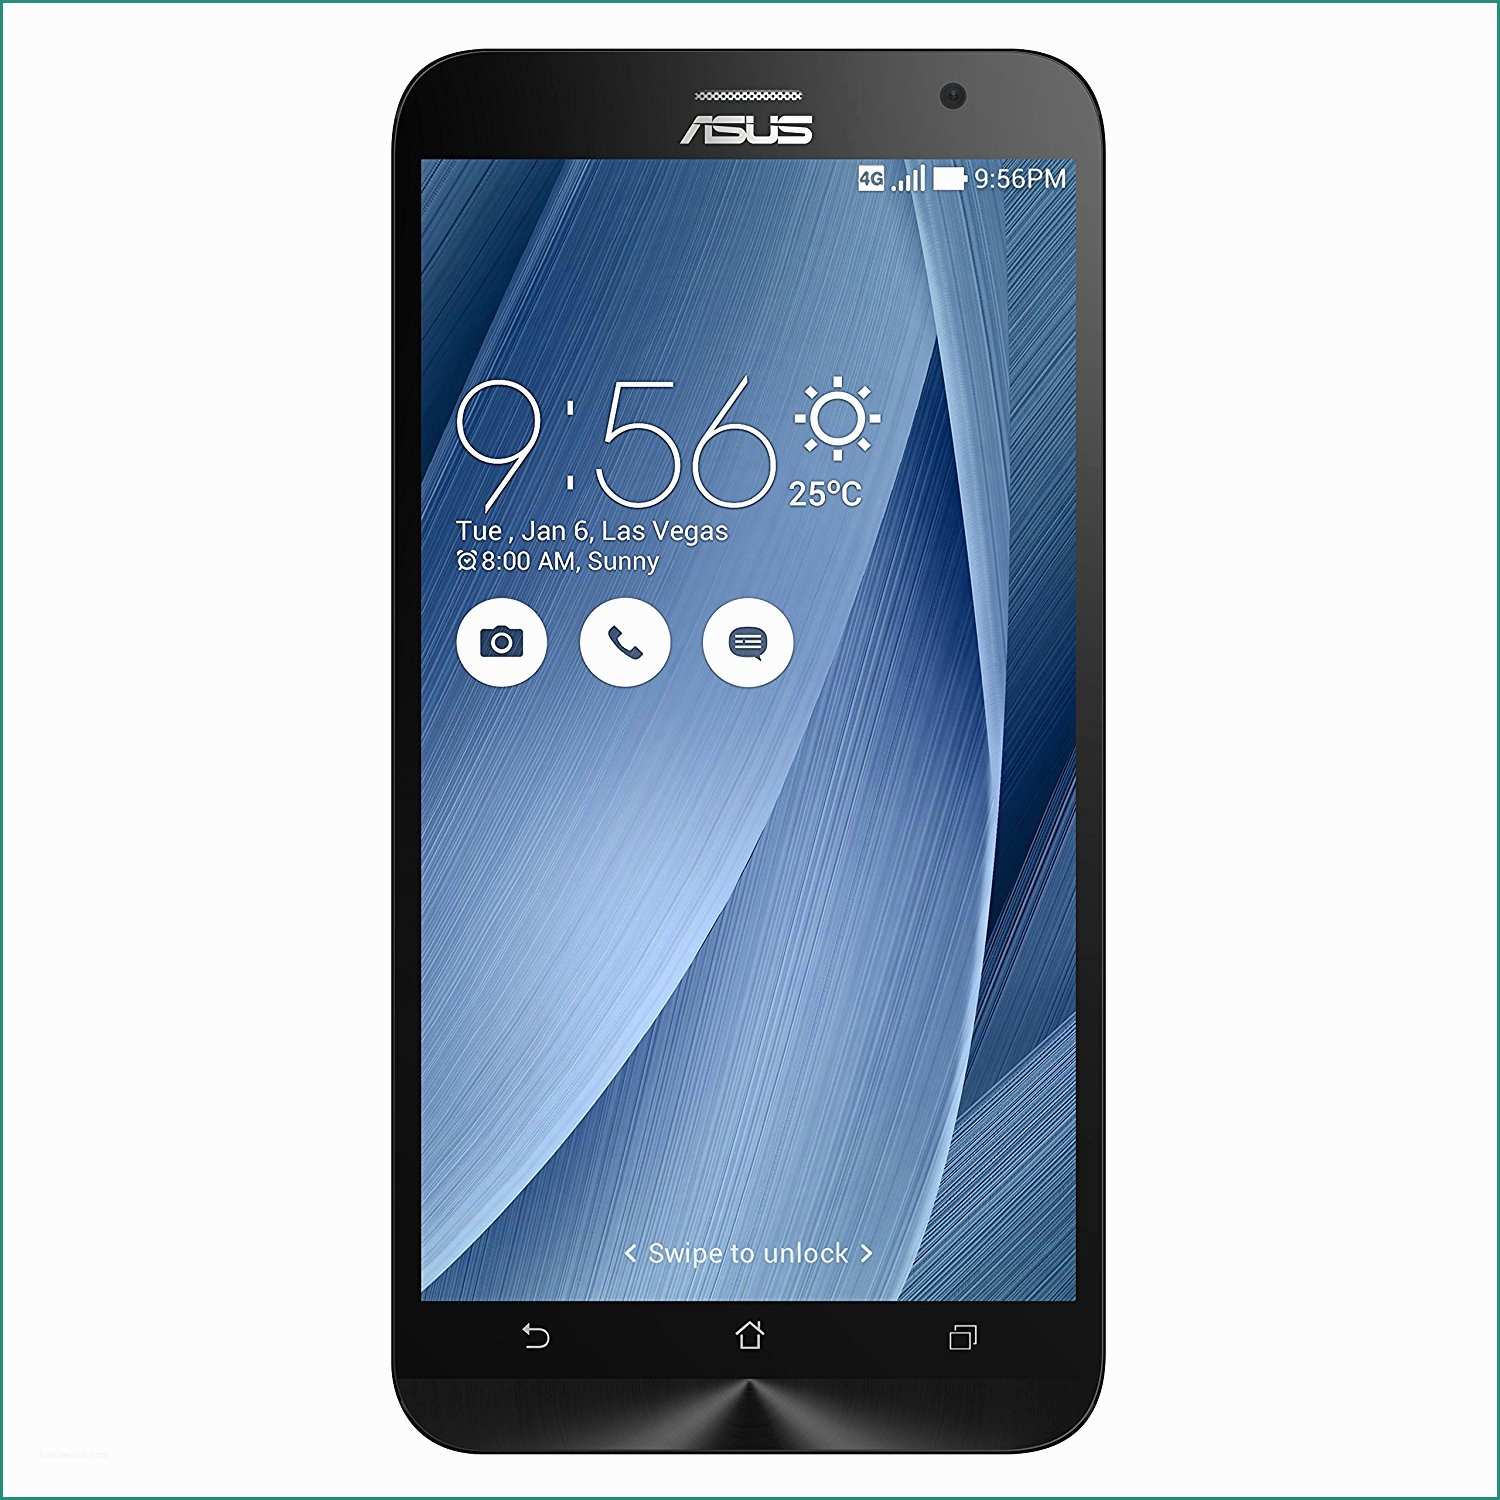 Stockisti Galaxy S E asus Zenfone 2 Smartphone Schermo Da 5 5" Full Hd Processore Quad